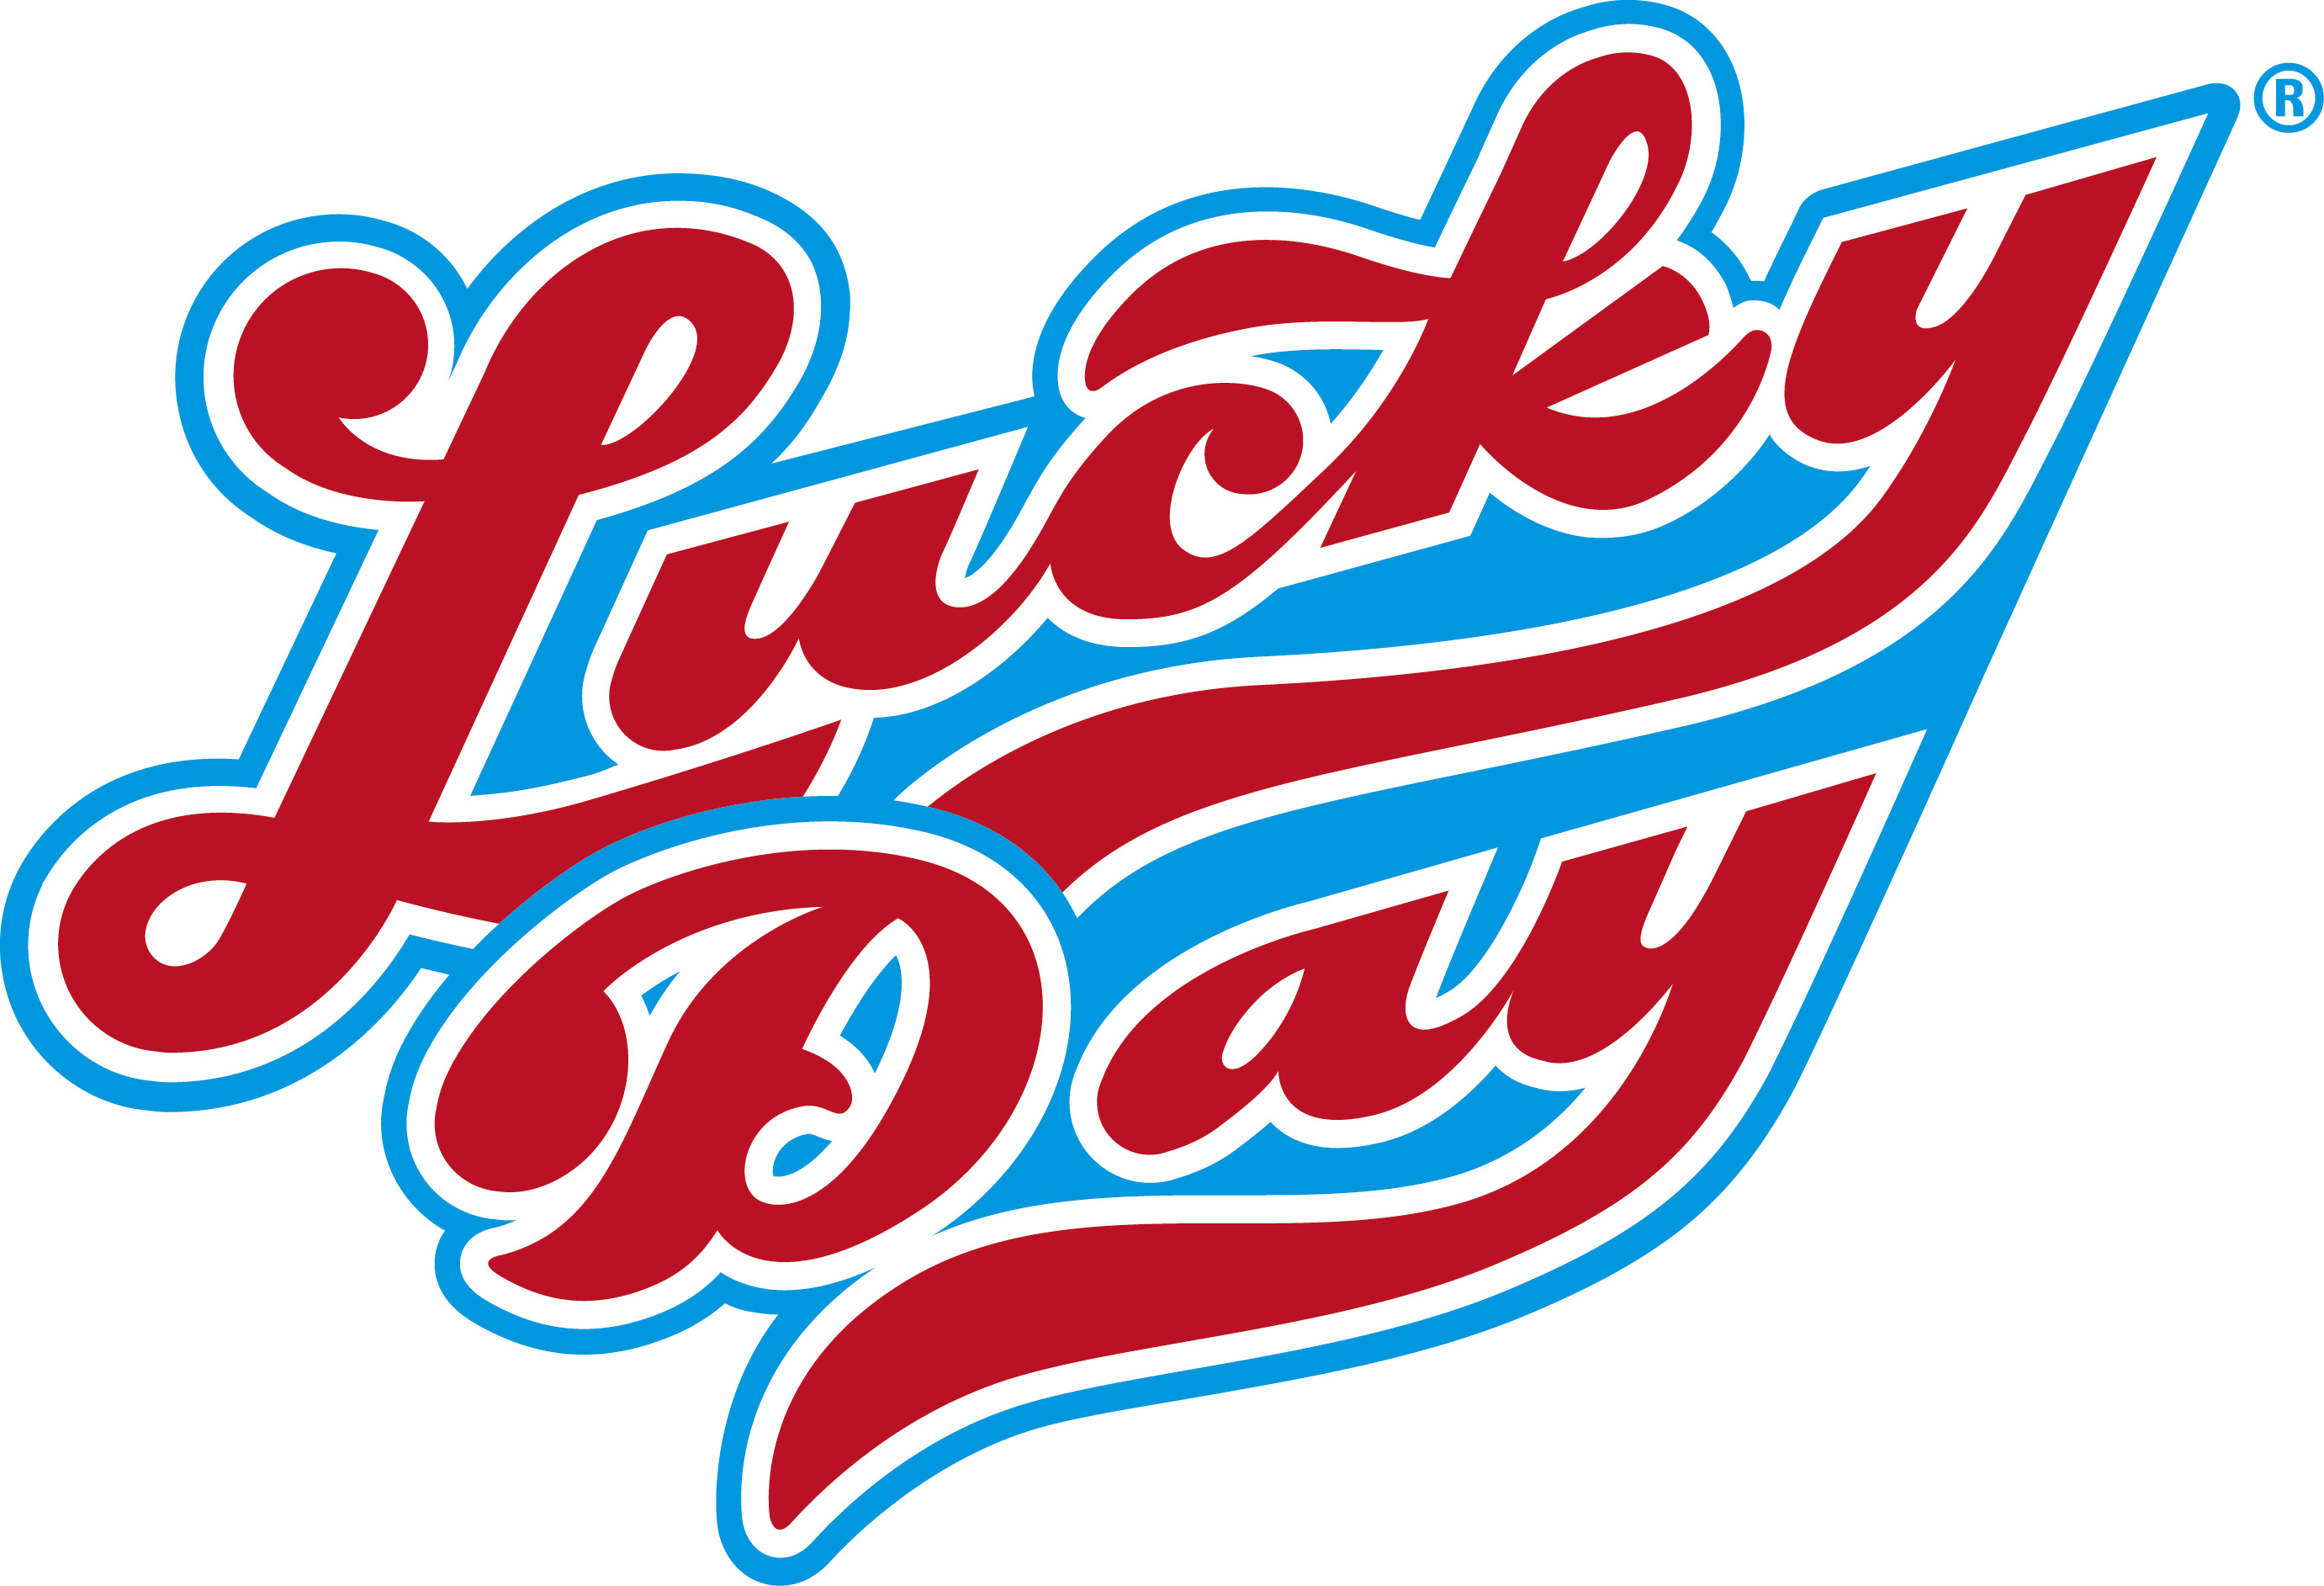 LuckyDay LoterijAdvies.nl